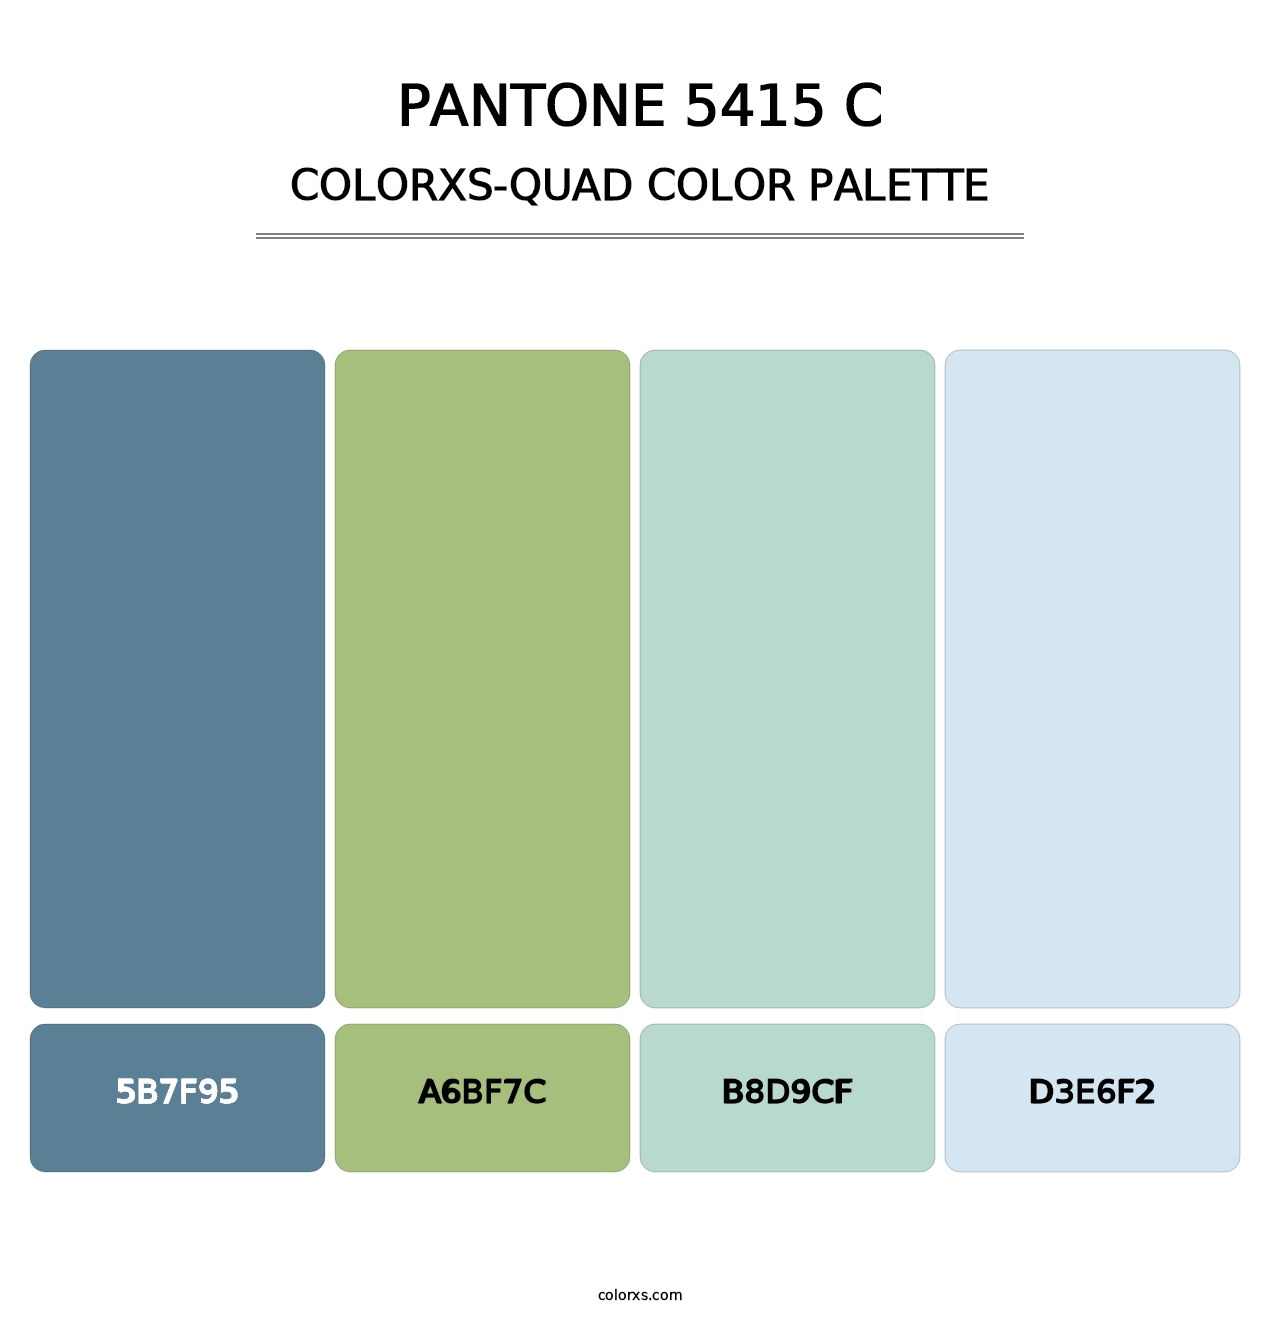 PANTONE 5415 C - Colorxs Quad Palette